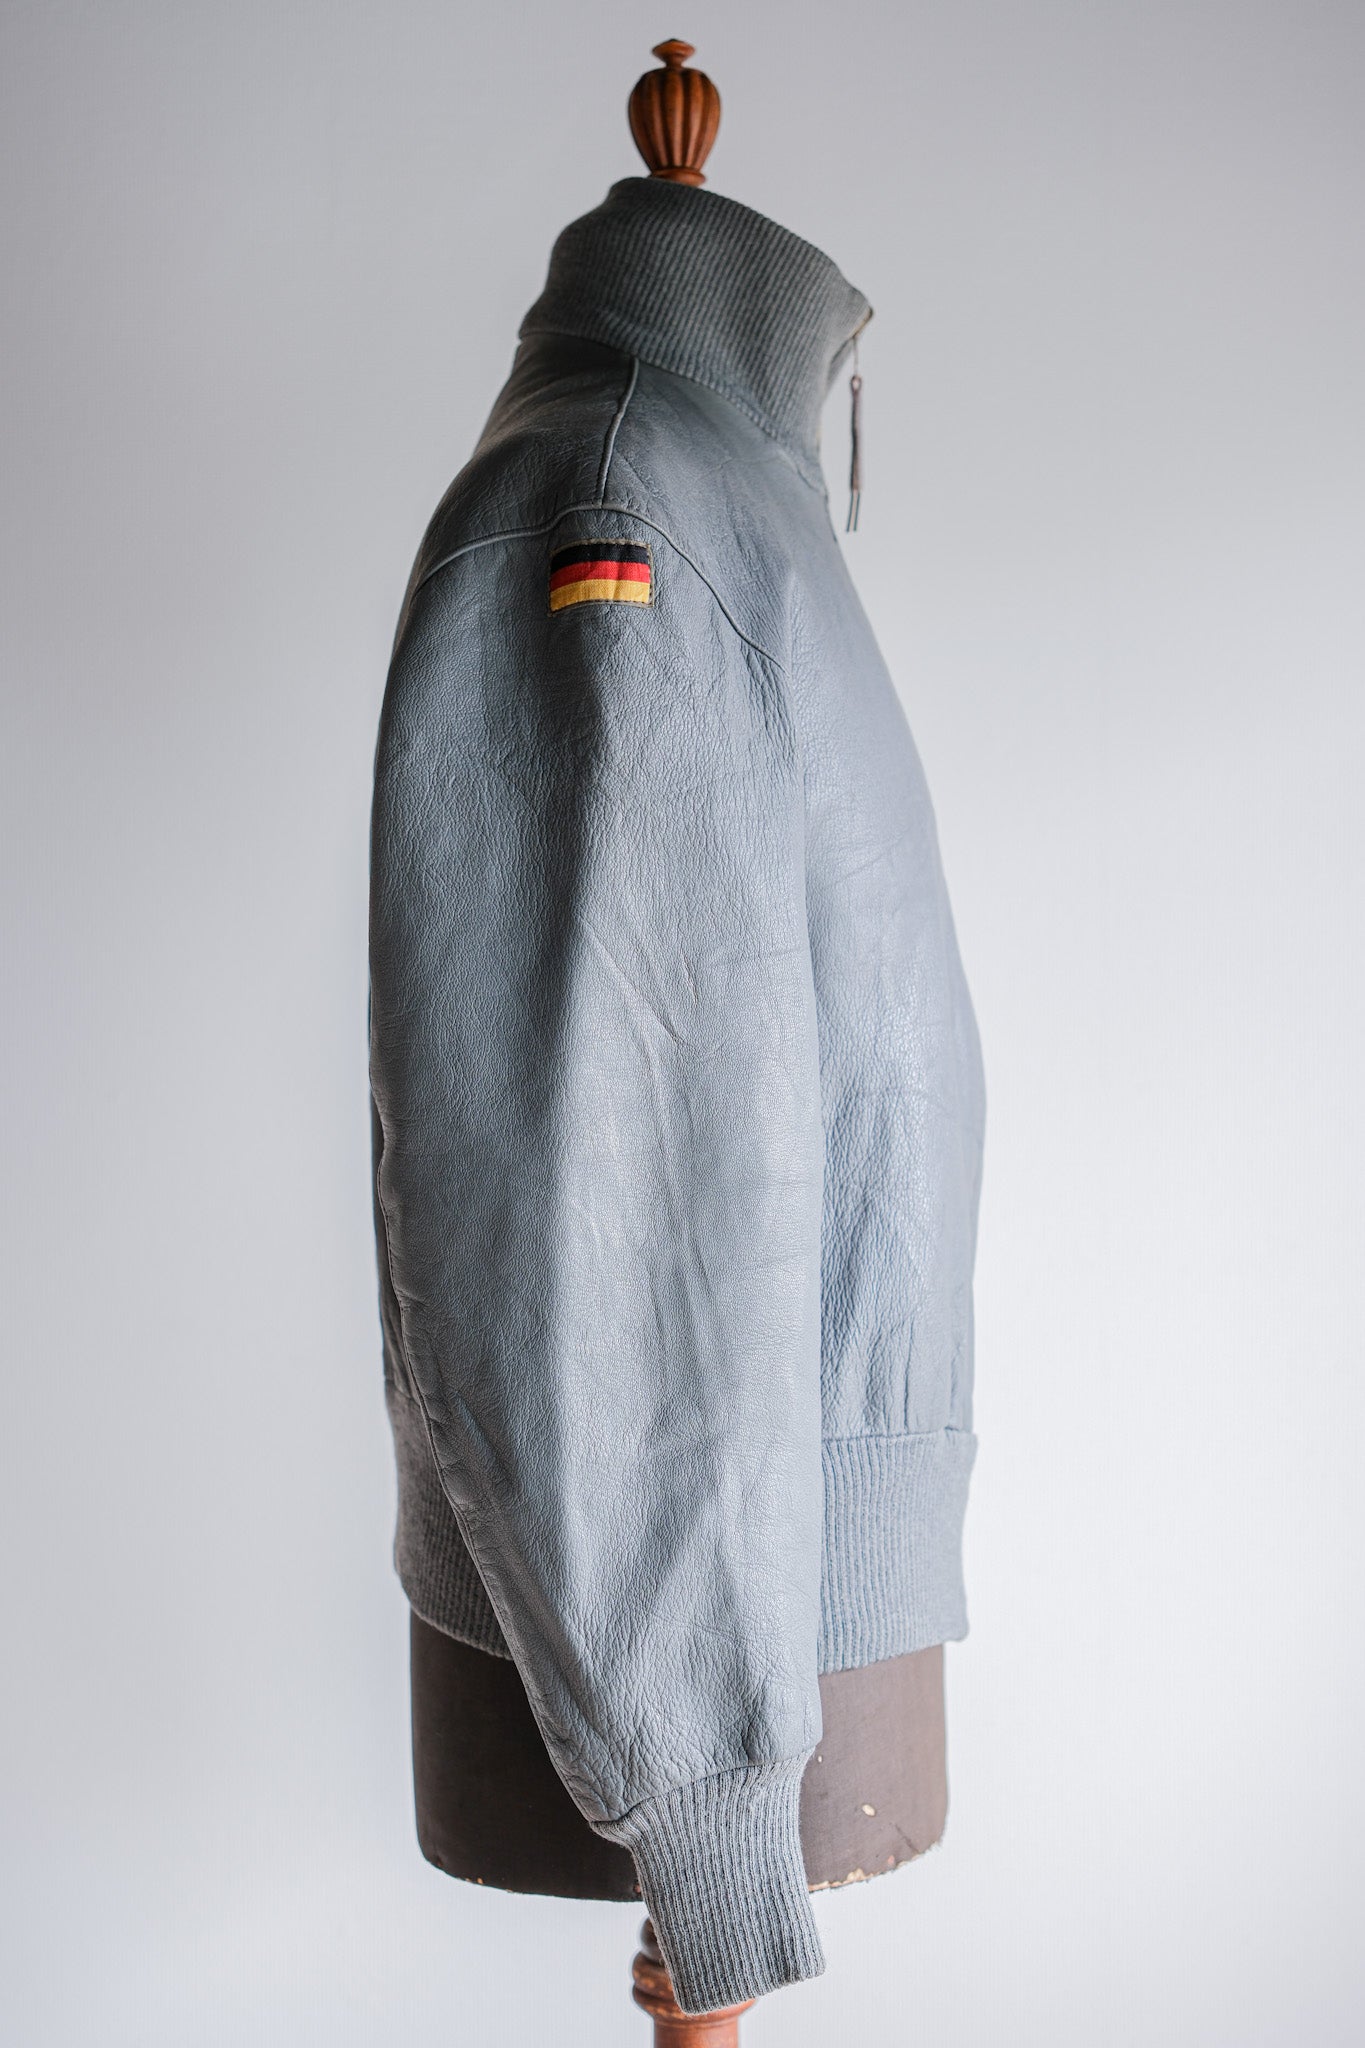 [〜70年代]西德航空飛行員皮革夾克大小。6